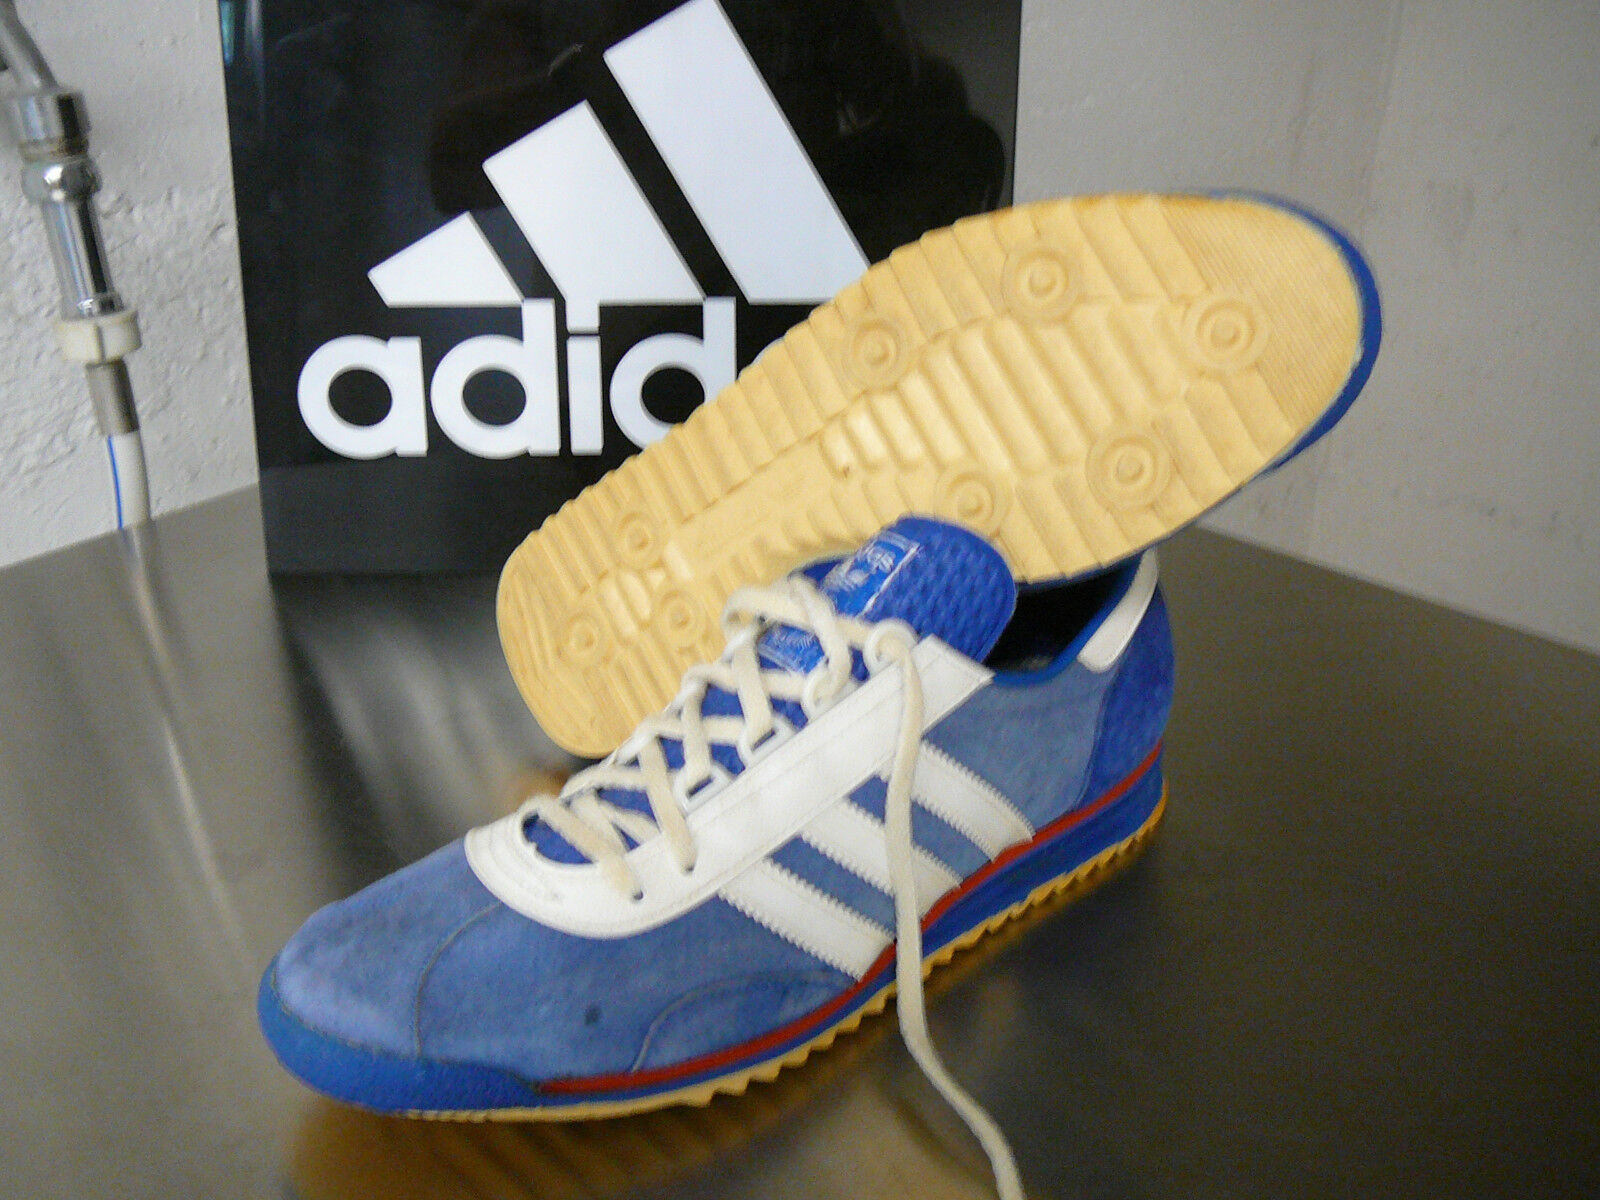 Adidas de colección Achill Reino Unido 10,5 hecho en Alemania | eBay